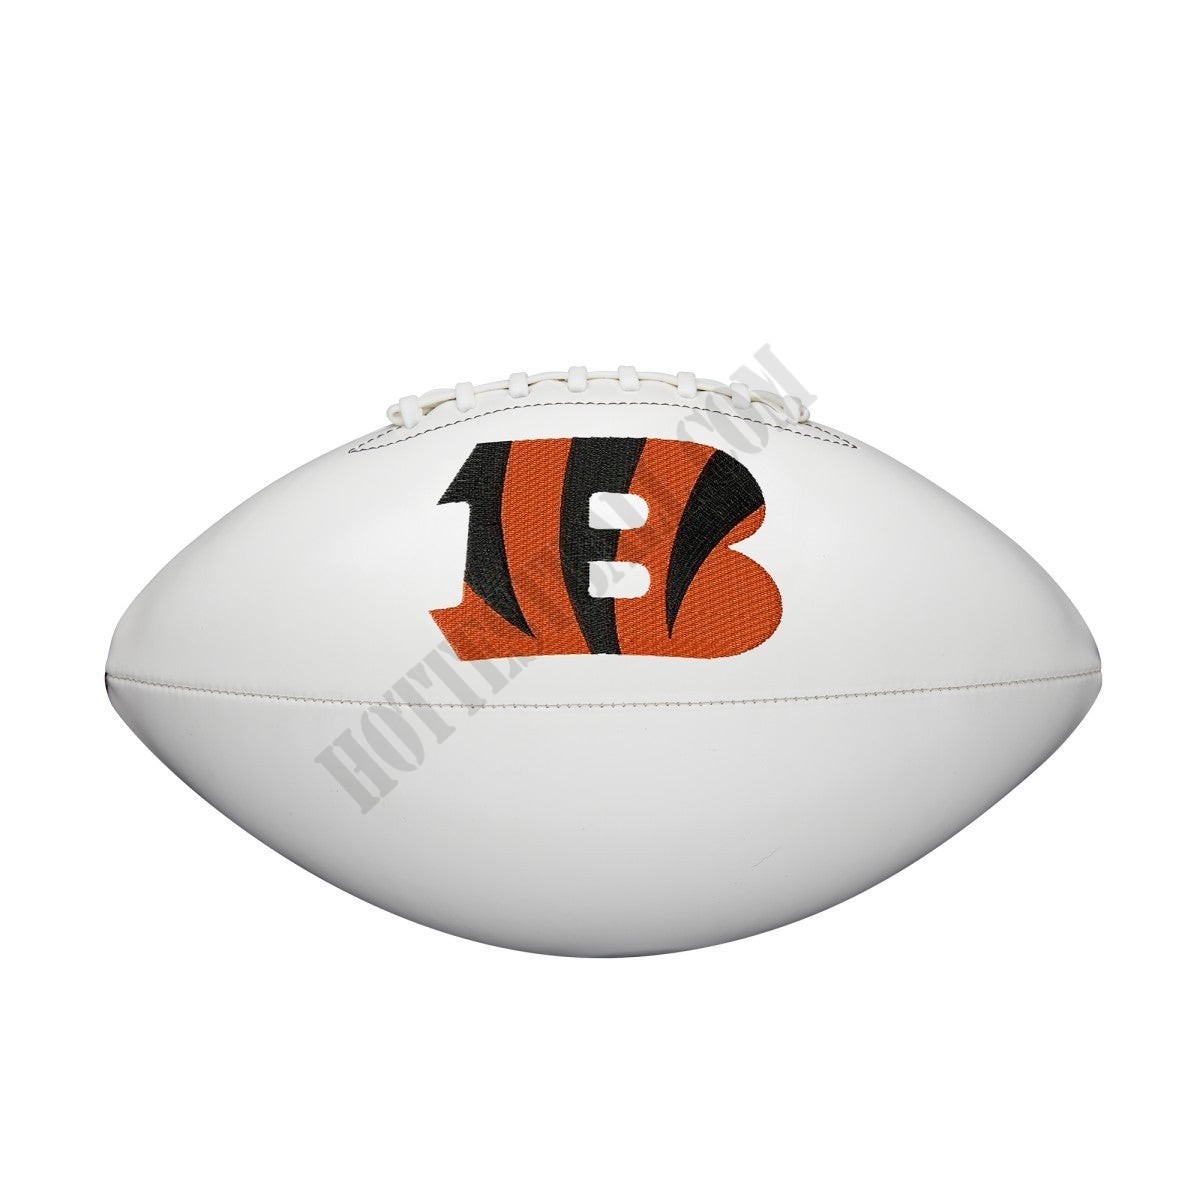 NFL Live Signature Autograph Football - Cincinnati Bengals ● Wilson Promotions - -4